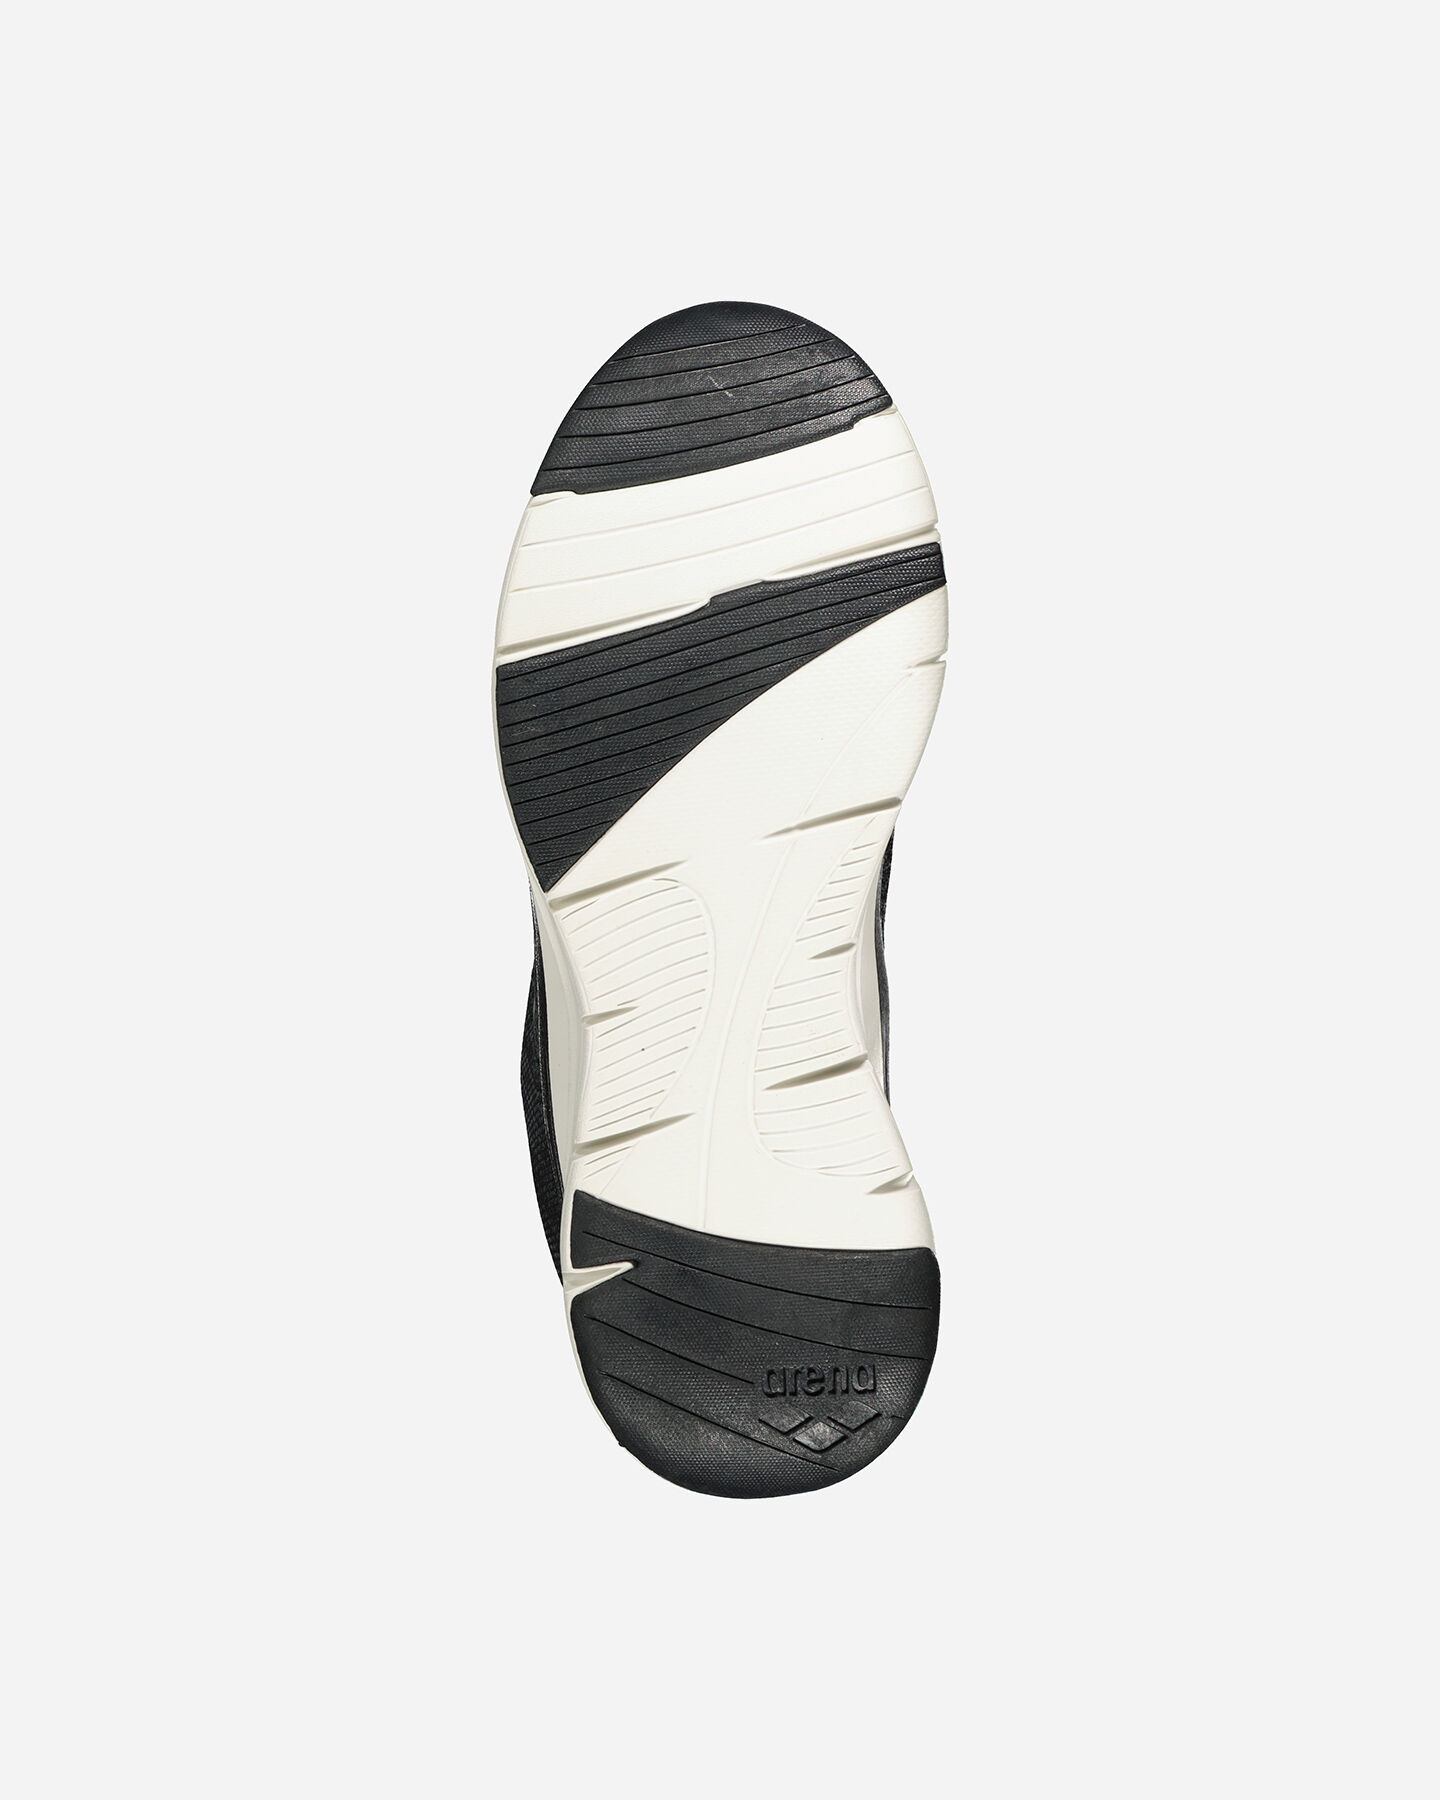  Scarpe sneakers ARENA FASTRACK EVO M S4126680|02|42 scatto 2